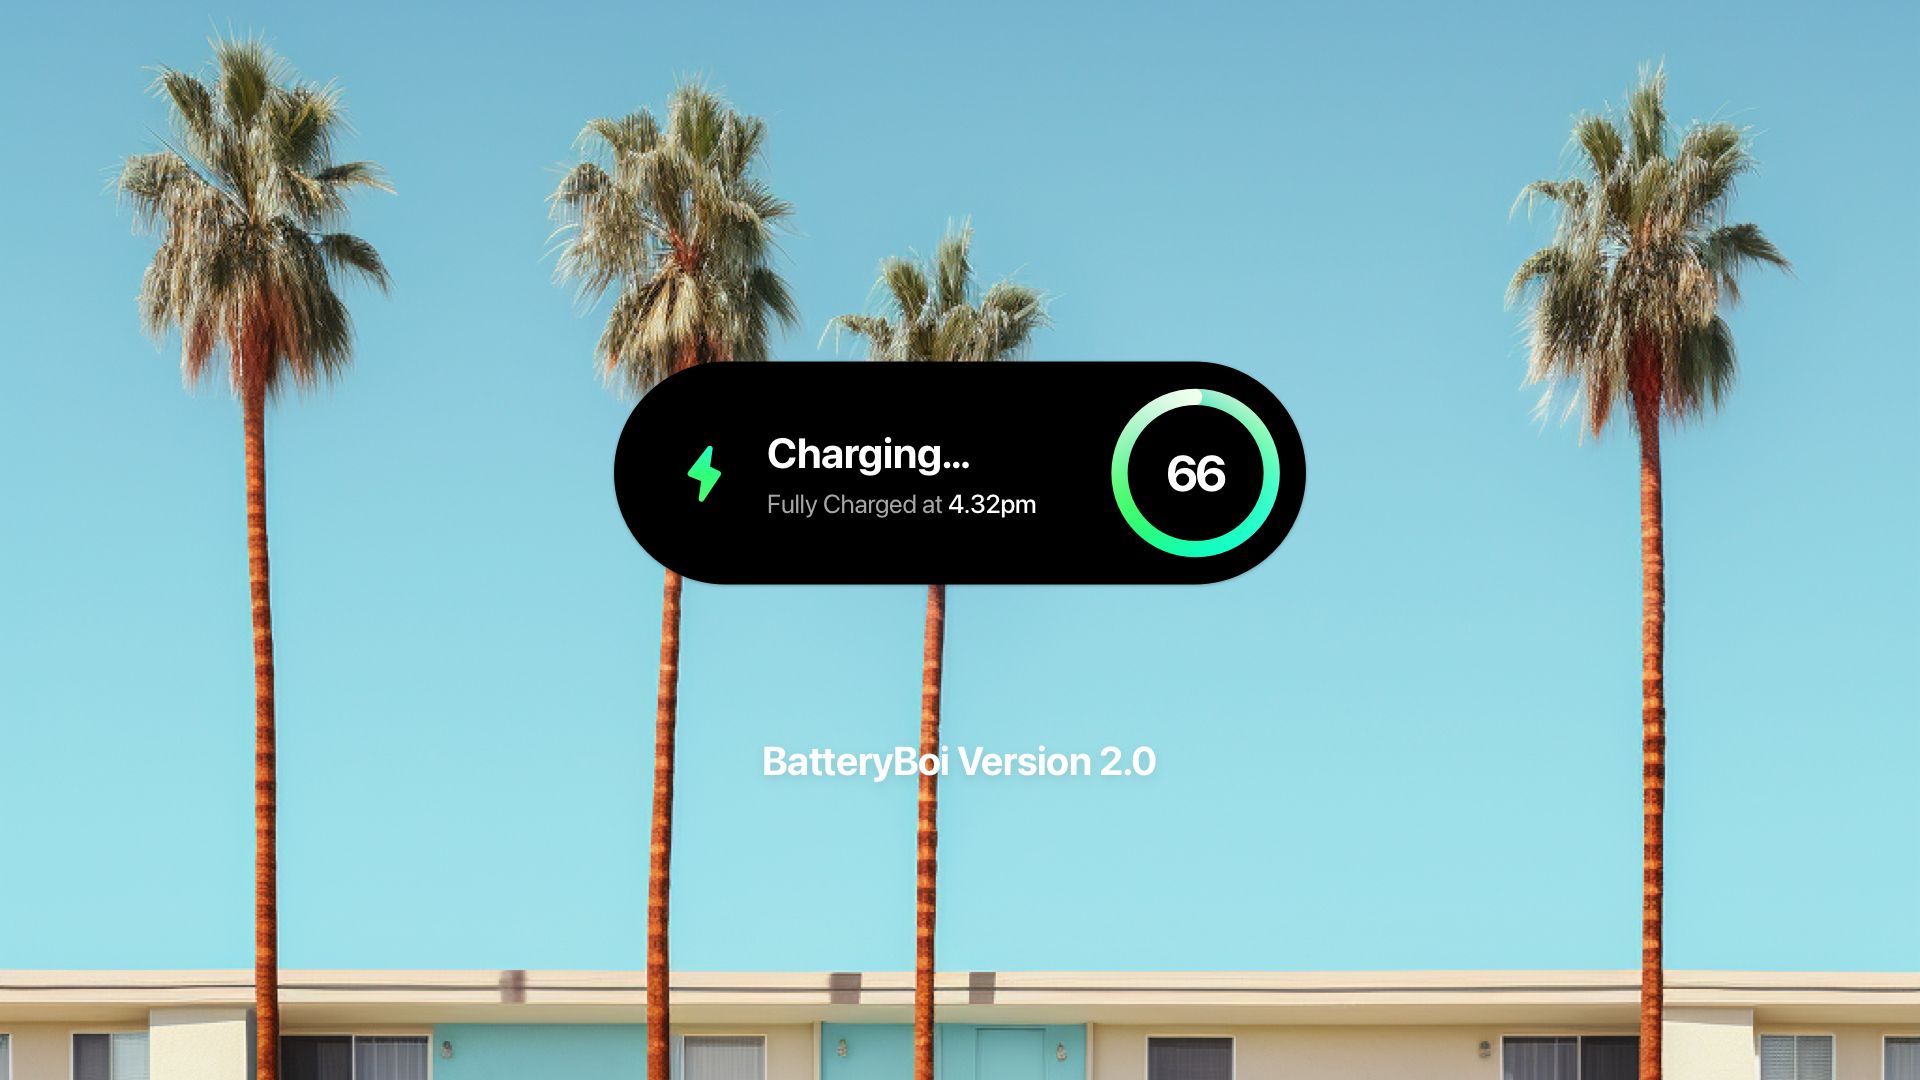 Крохотное приложение BatteryBoi получило две интересных функции